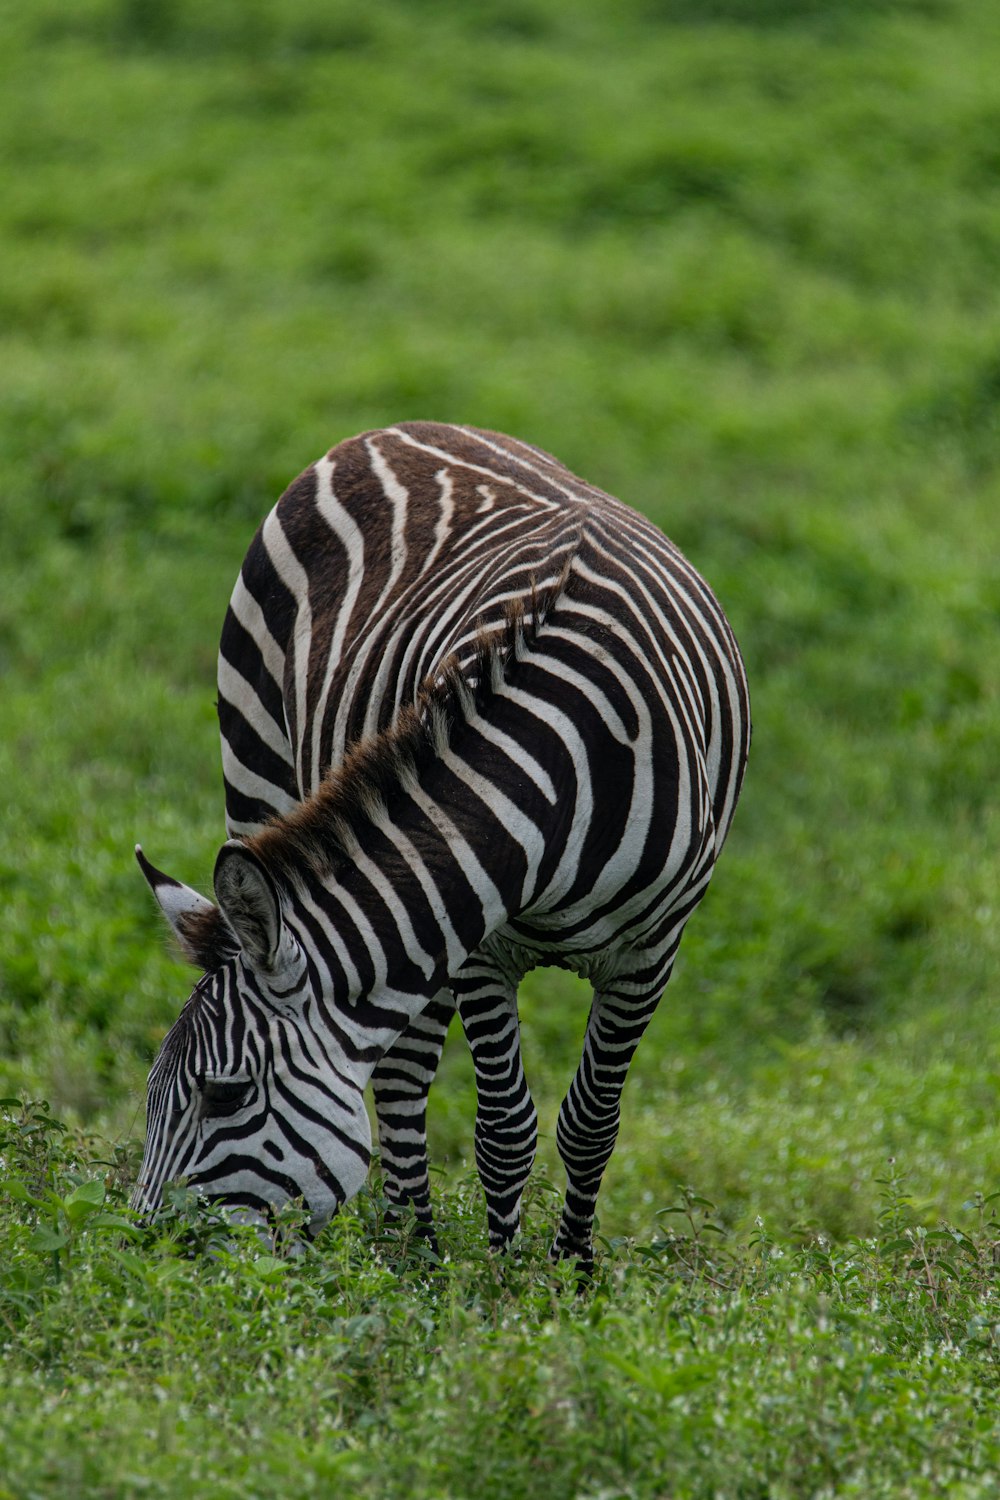 a zebra grazing in a field of green grass